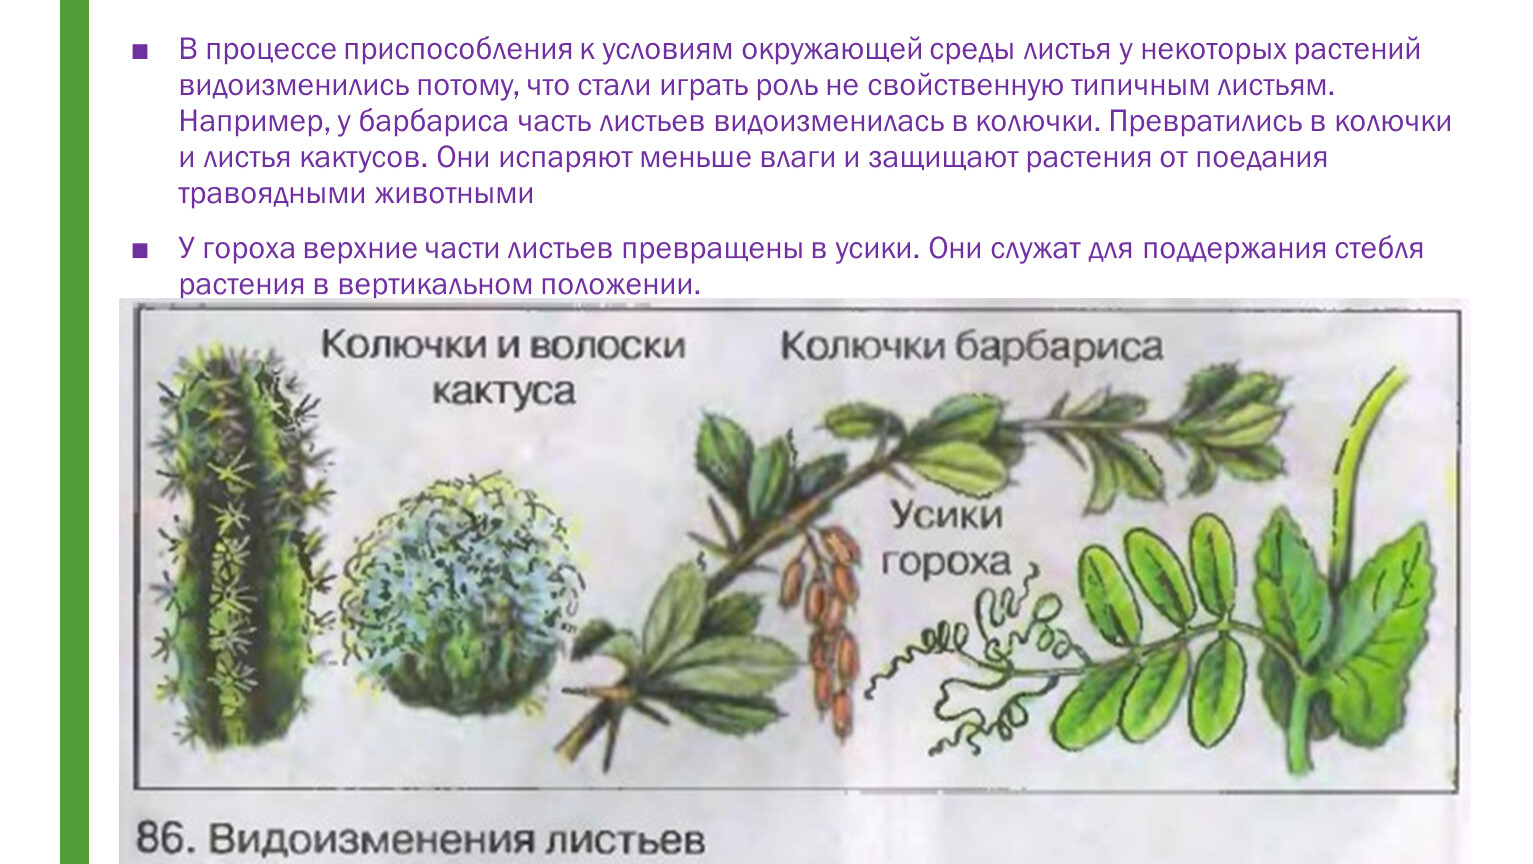 Видоизмененные листья кактуса и барбариса